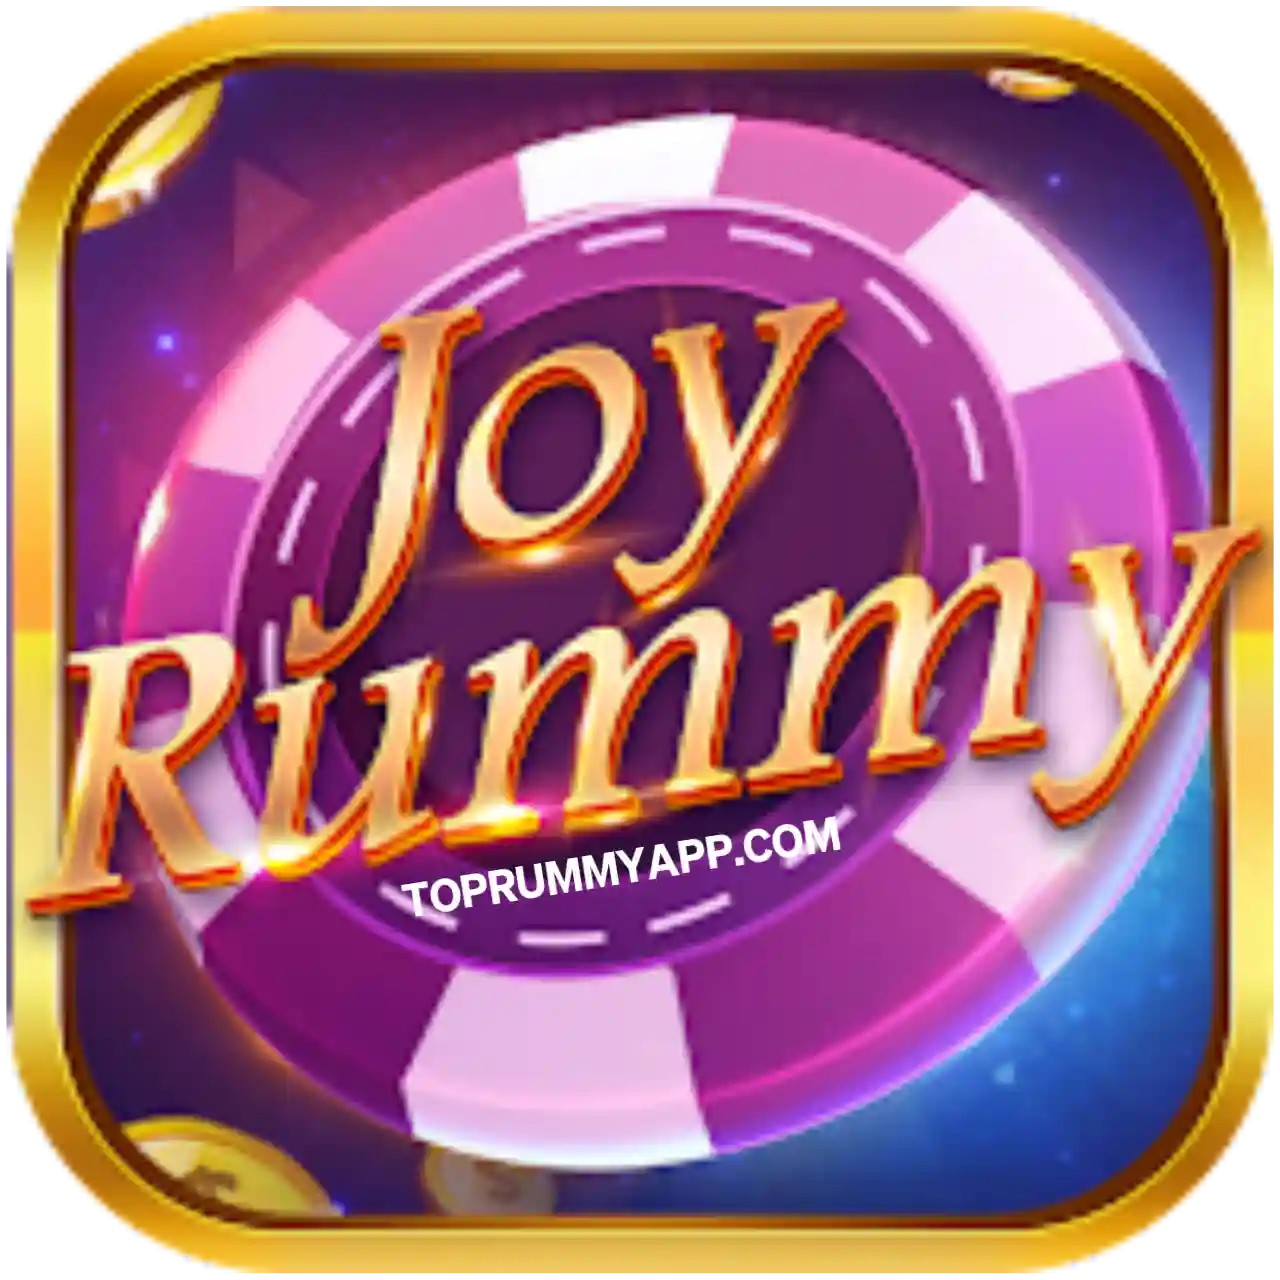 Joy Rummy Apk Download - All Rummy App List